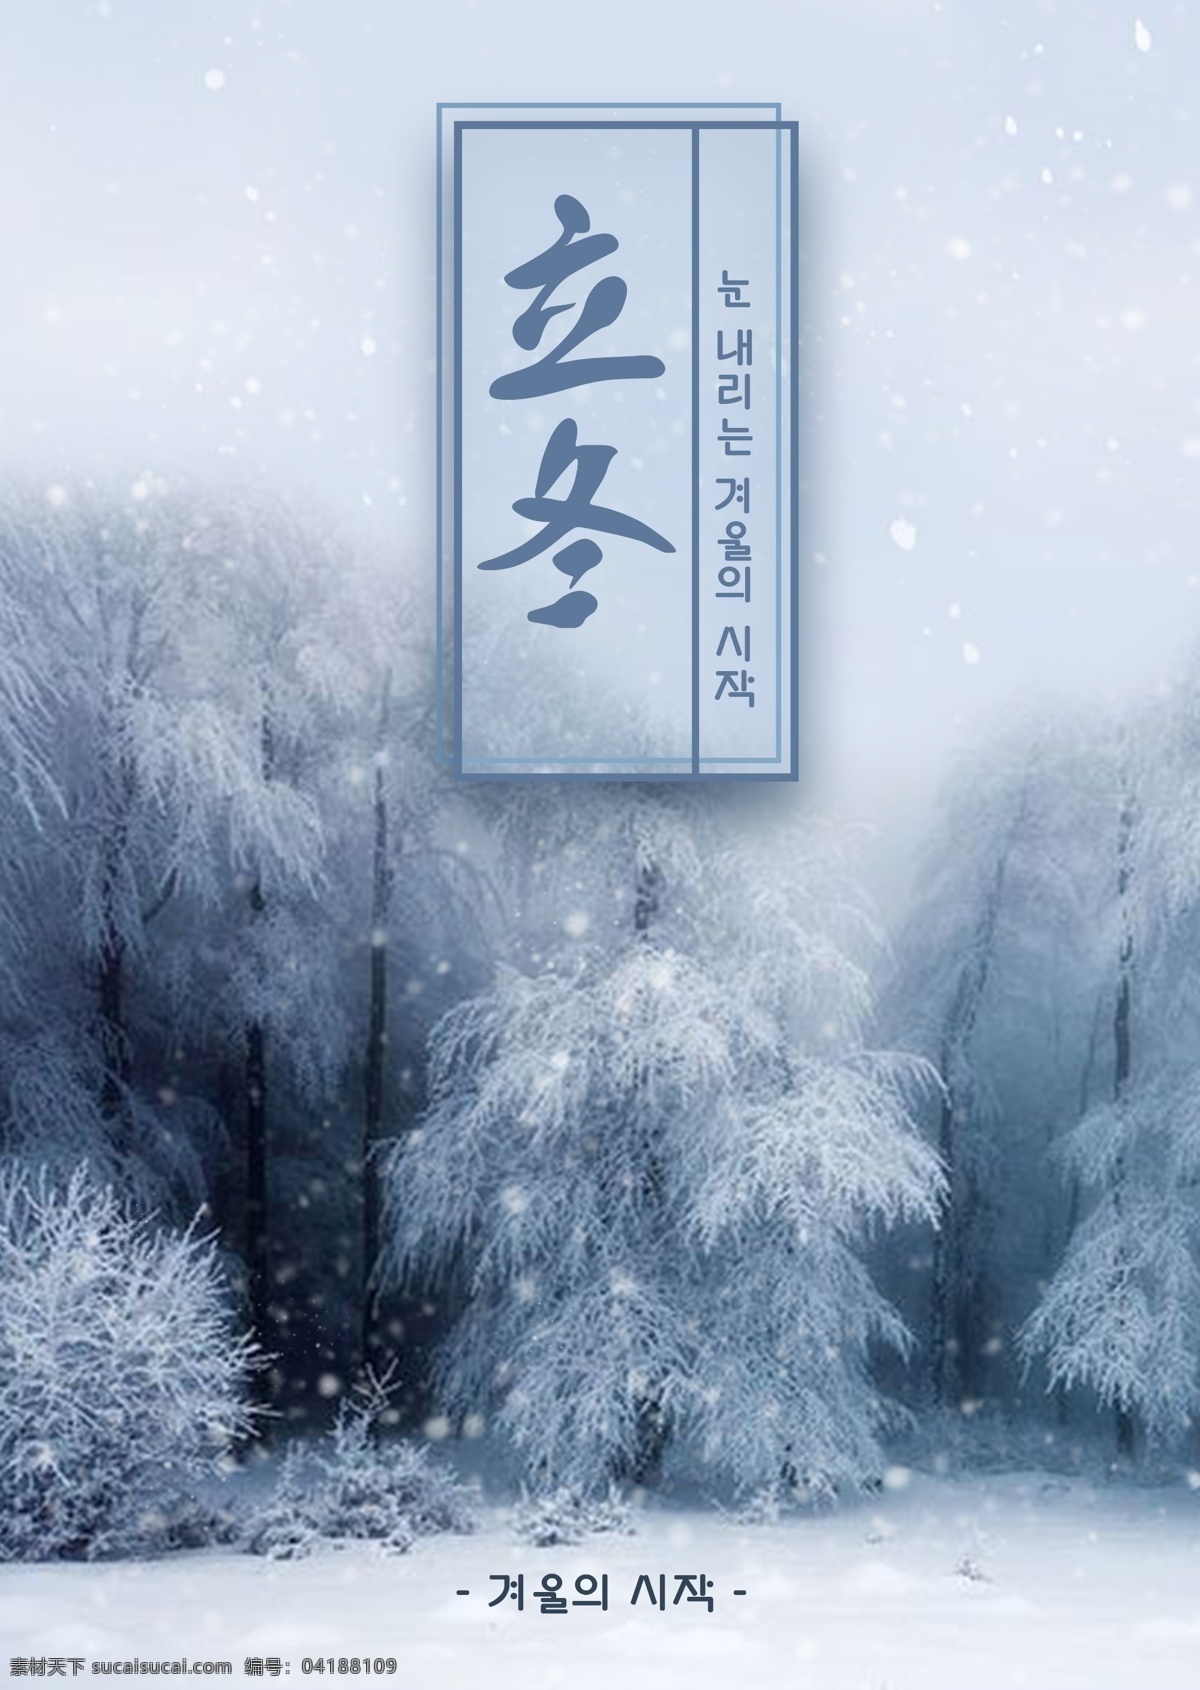 成熟 海报 模板 开始 之后 时尚设计 冬季 传统 灰色 树 韩国传统 雪景